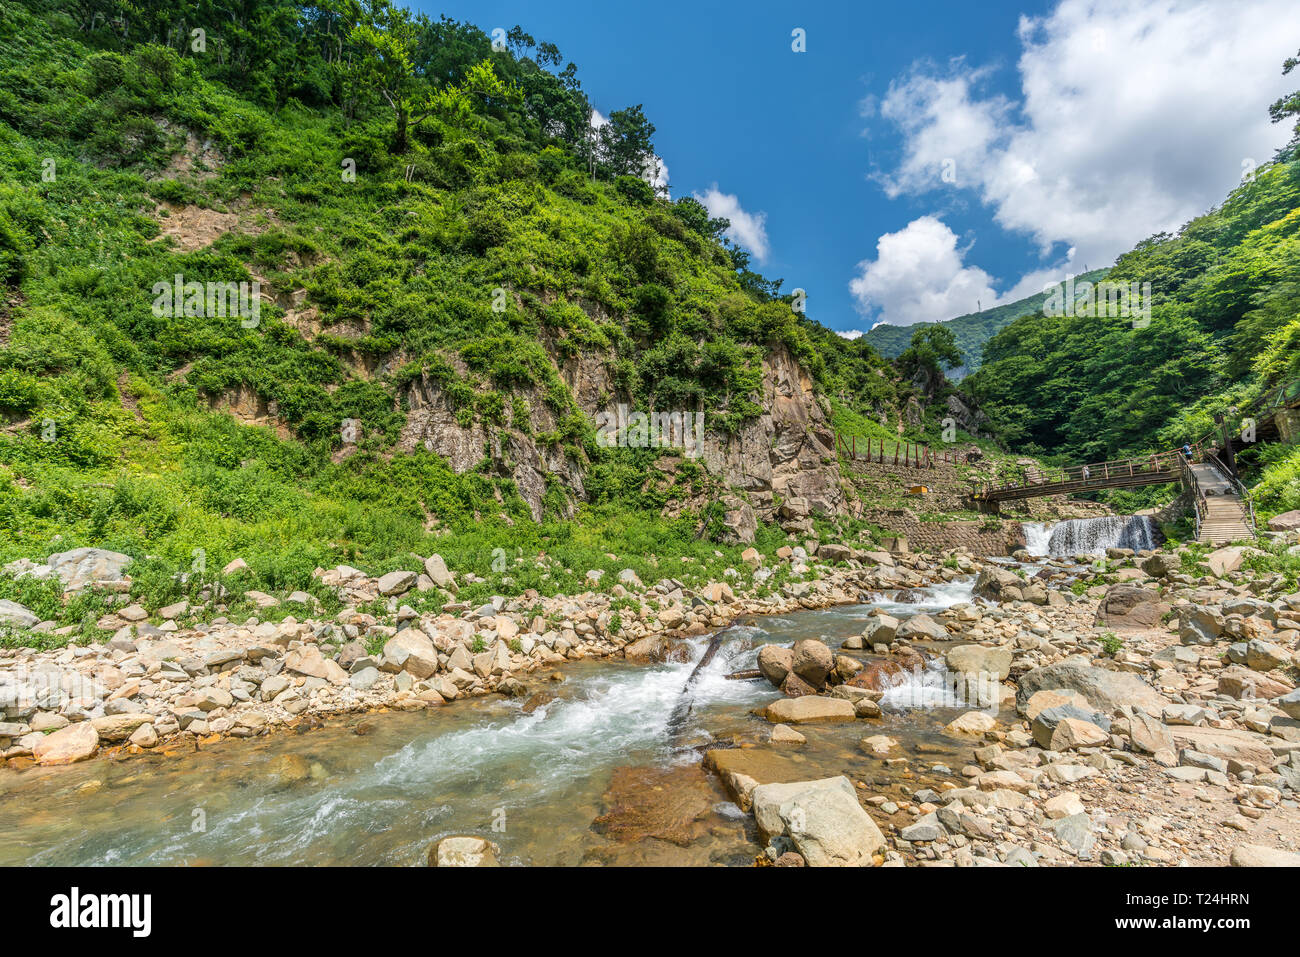 Yokoyu River (Yokoyugawa) in Jigokudani valey. Nagano Prefecture, Japan Stock Photo